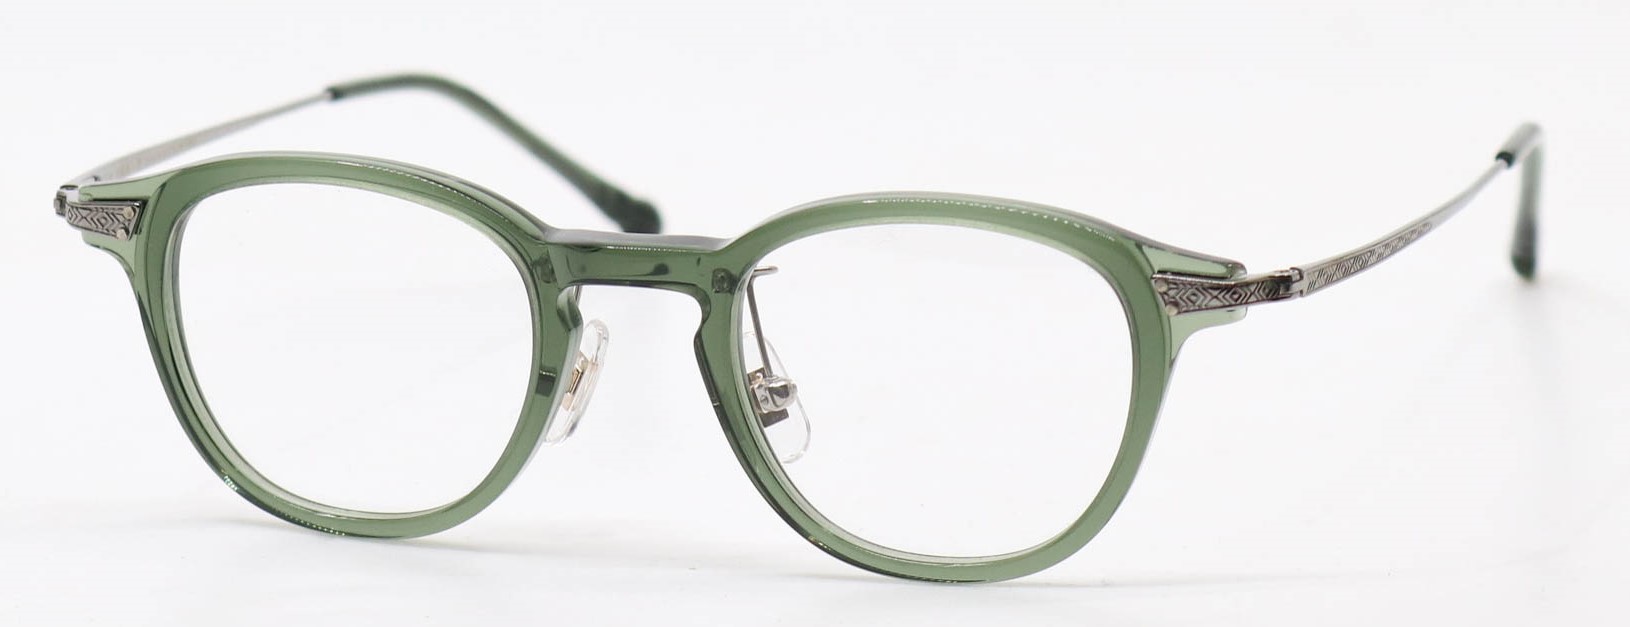 眼鏡のカラータイプC-5 Khaki/Gray